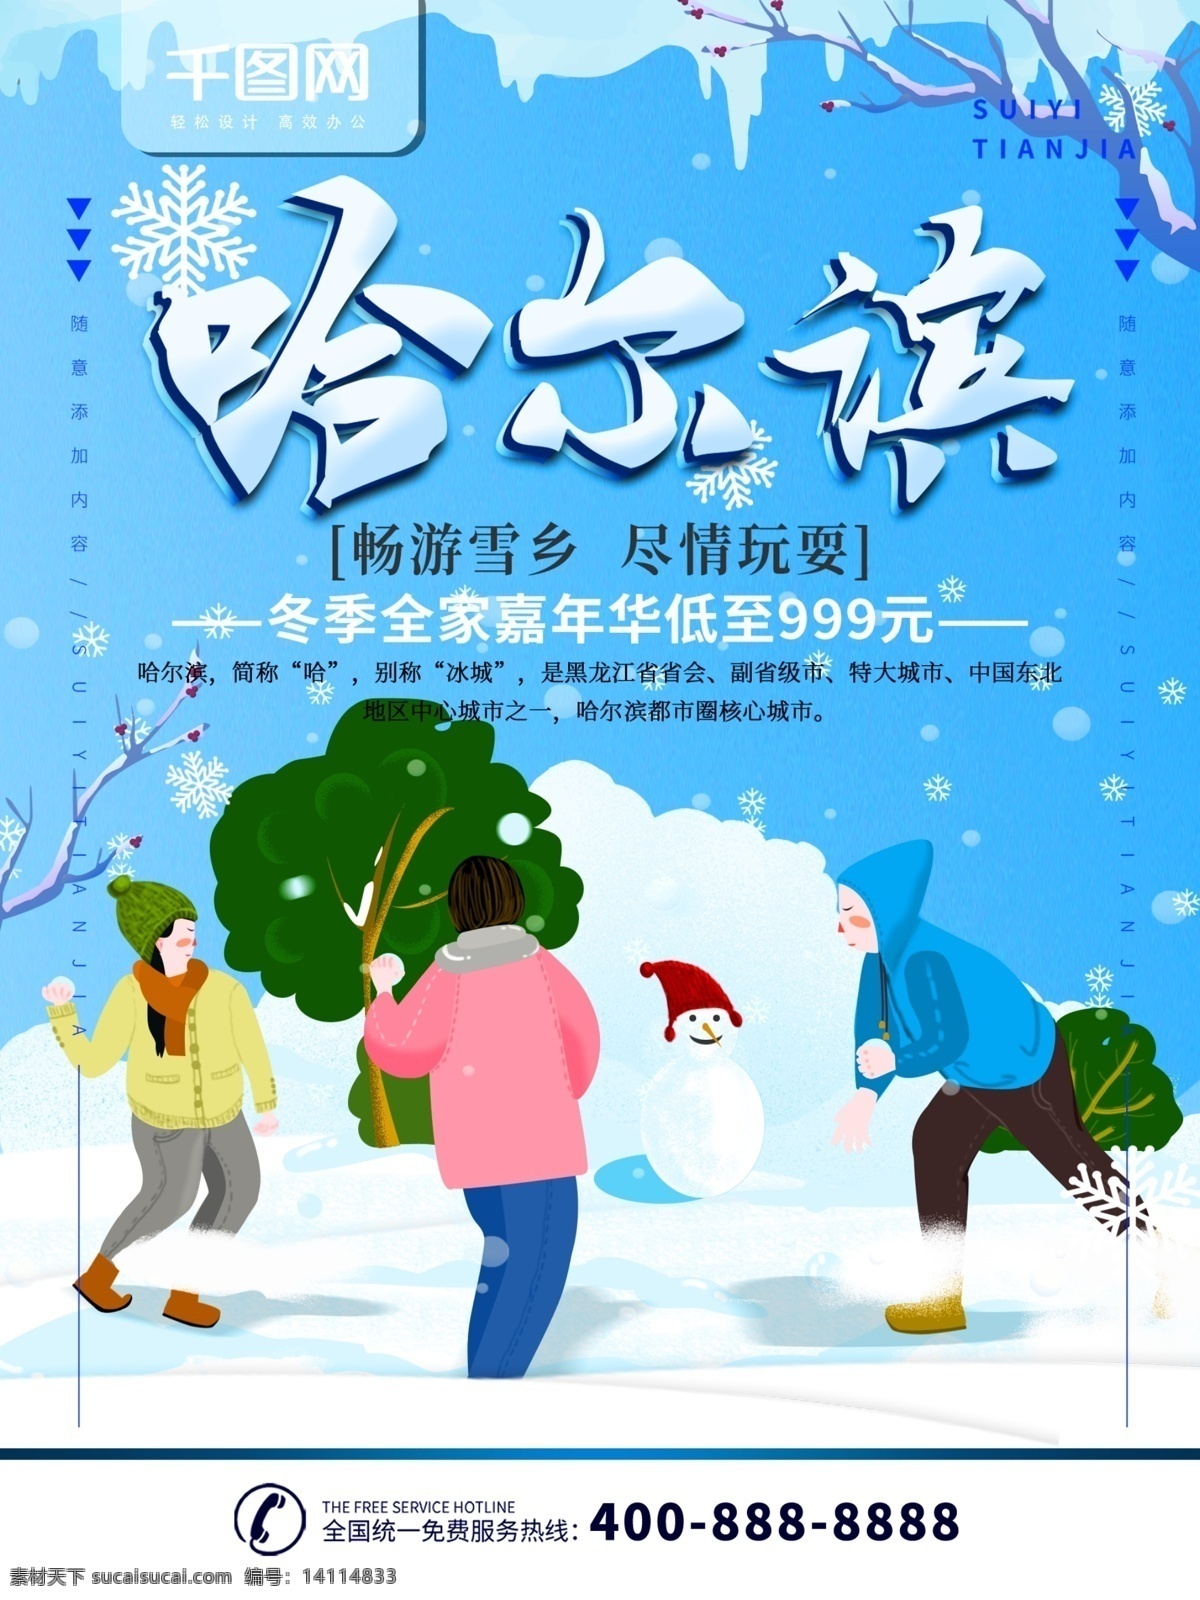 简约 蓝色 旅游 海报 哈尔滨 宣传海报 冬季 旅行 旅游海报 哈尔滨旅游 雪乡 冬季旅行 雪地